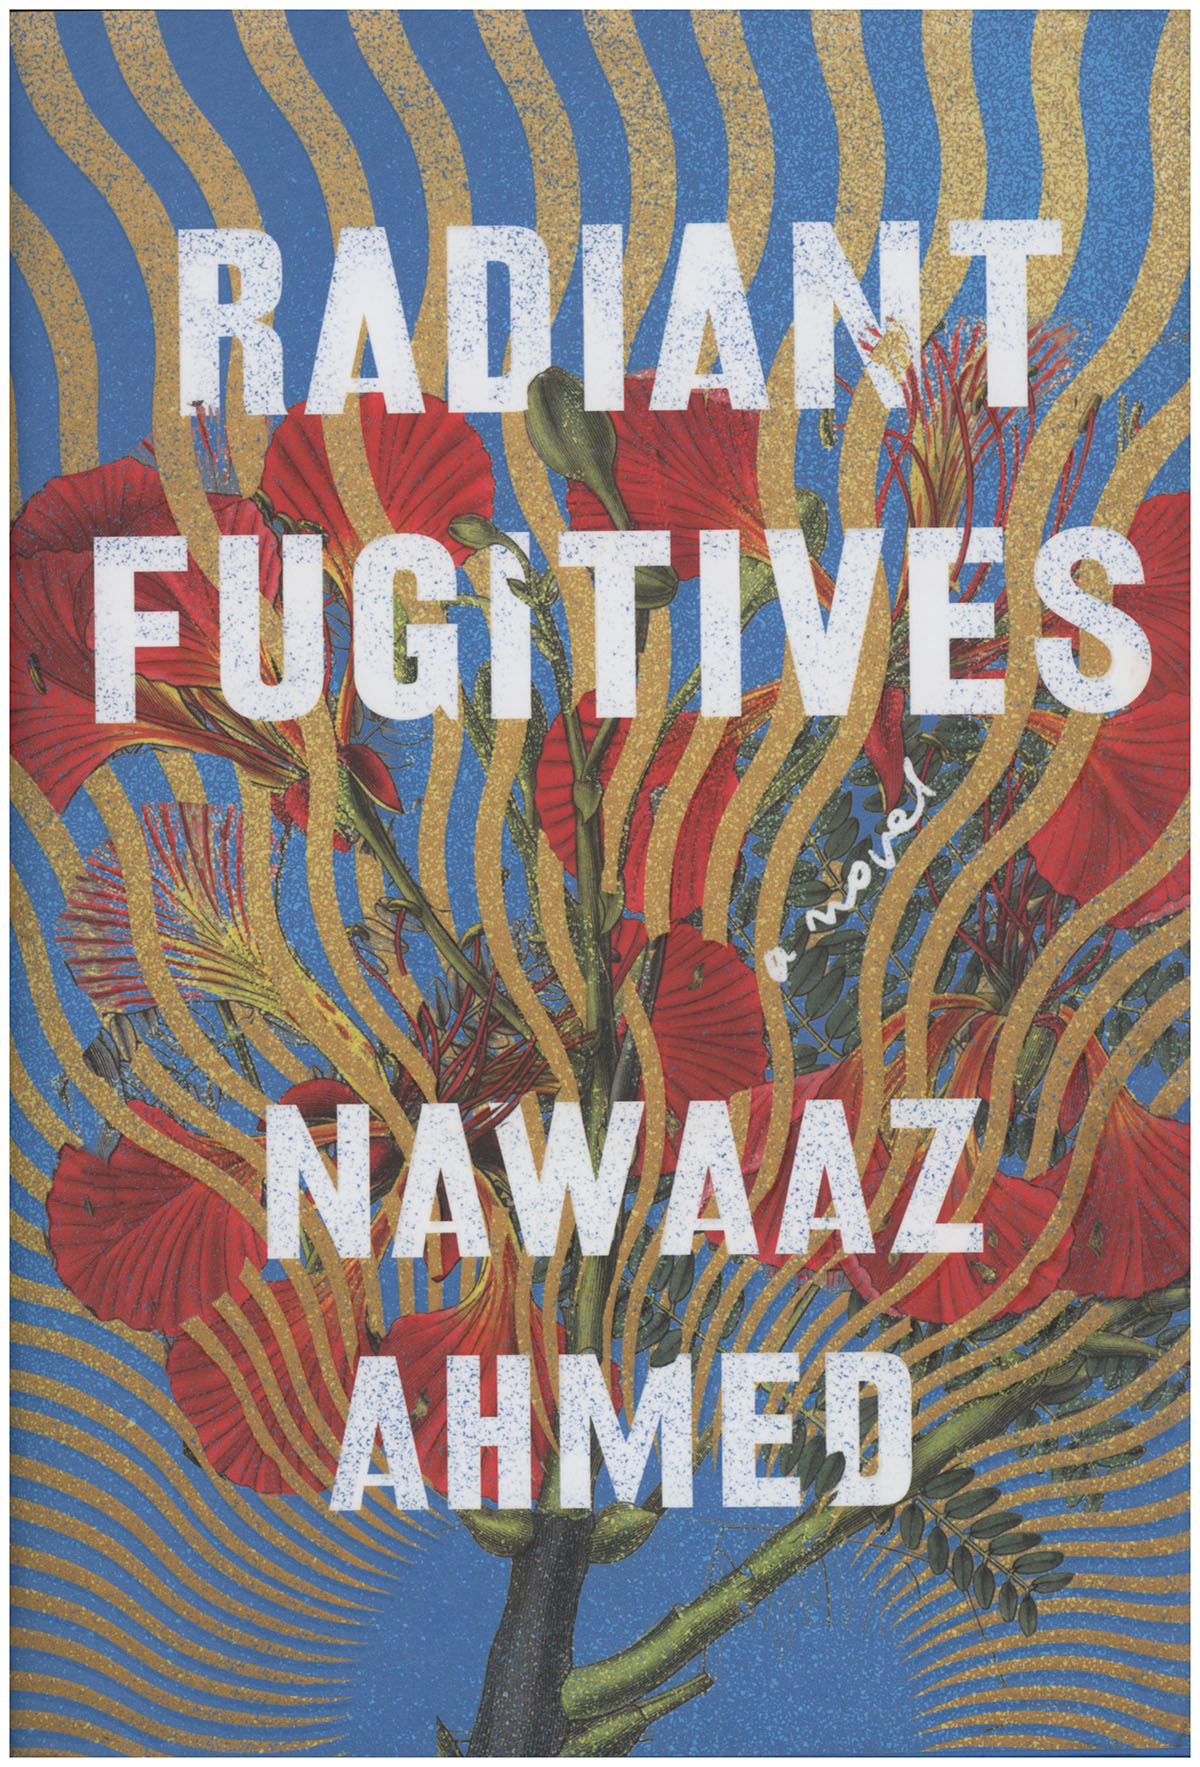 Ahmed, Nawaaz - Radiant Fugitives